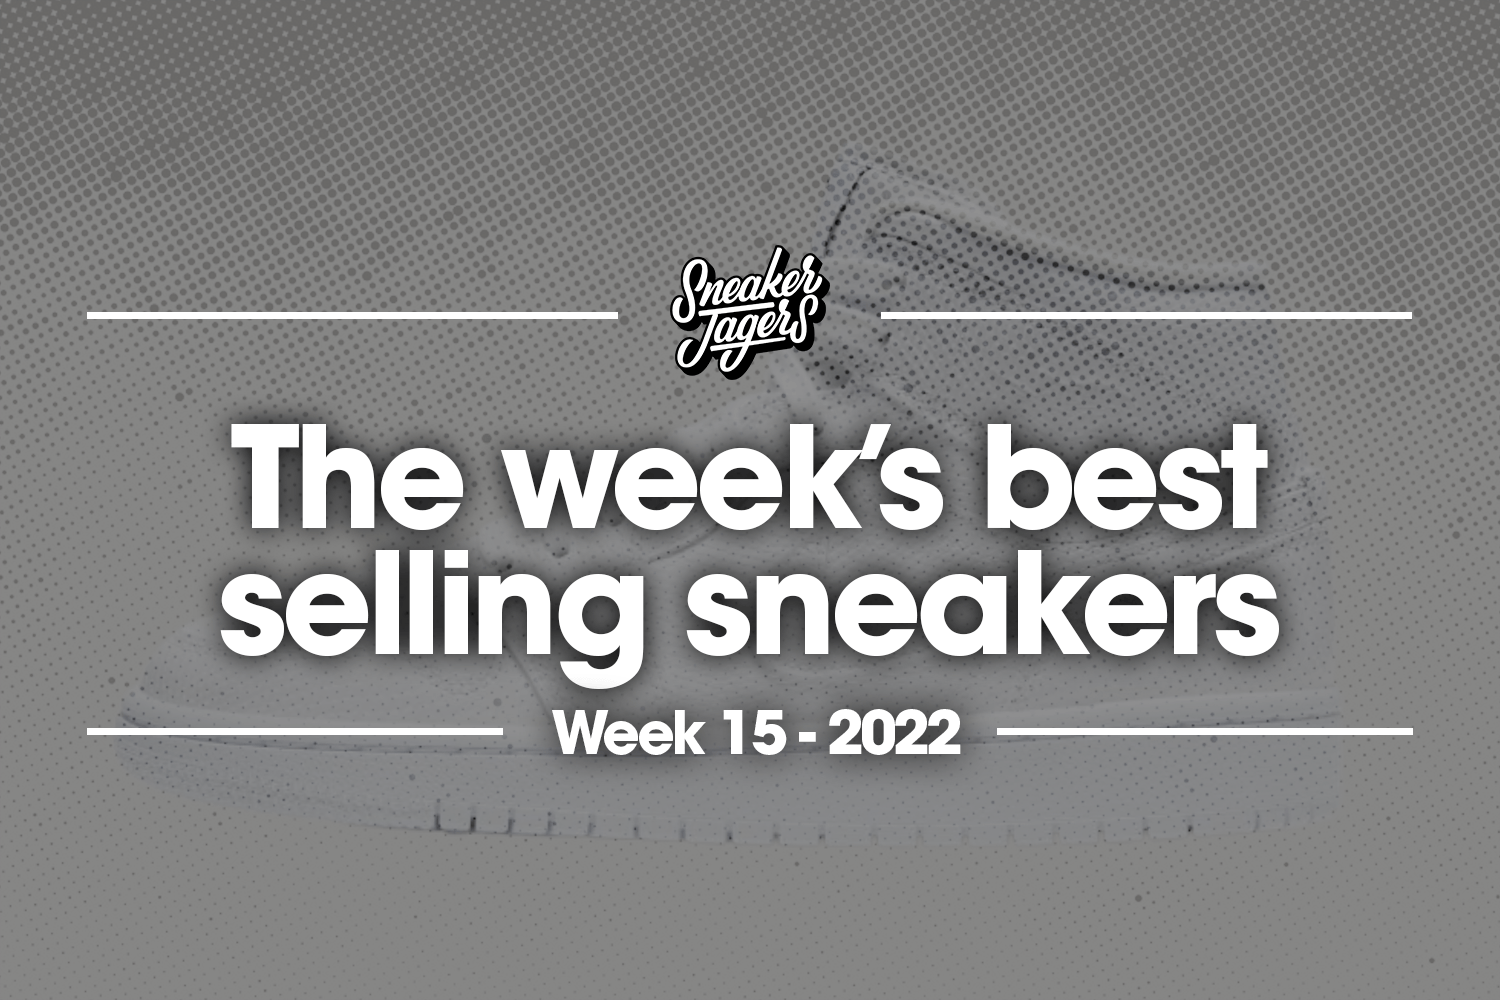 De 5 bestverkochte sneakers van week 15